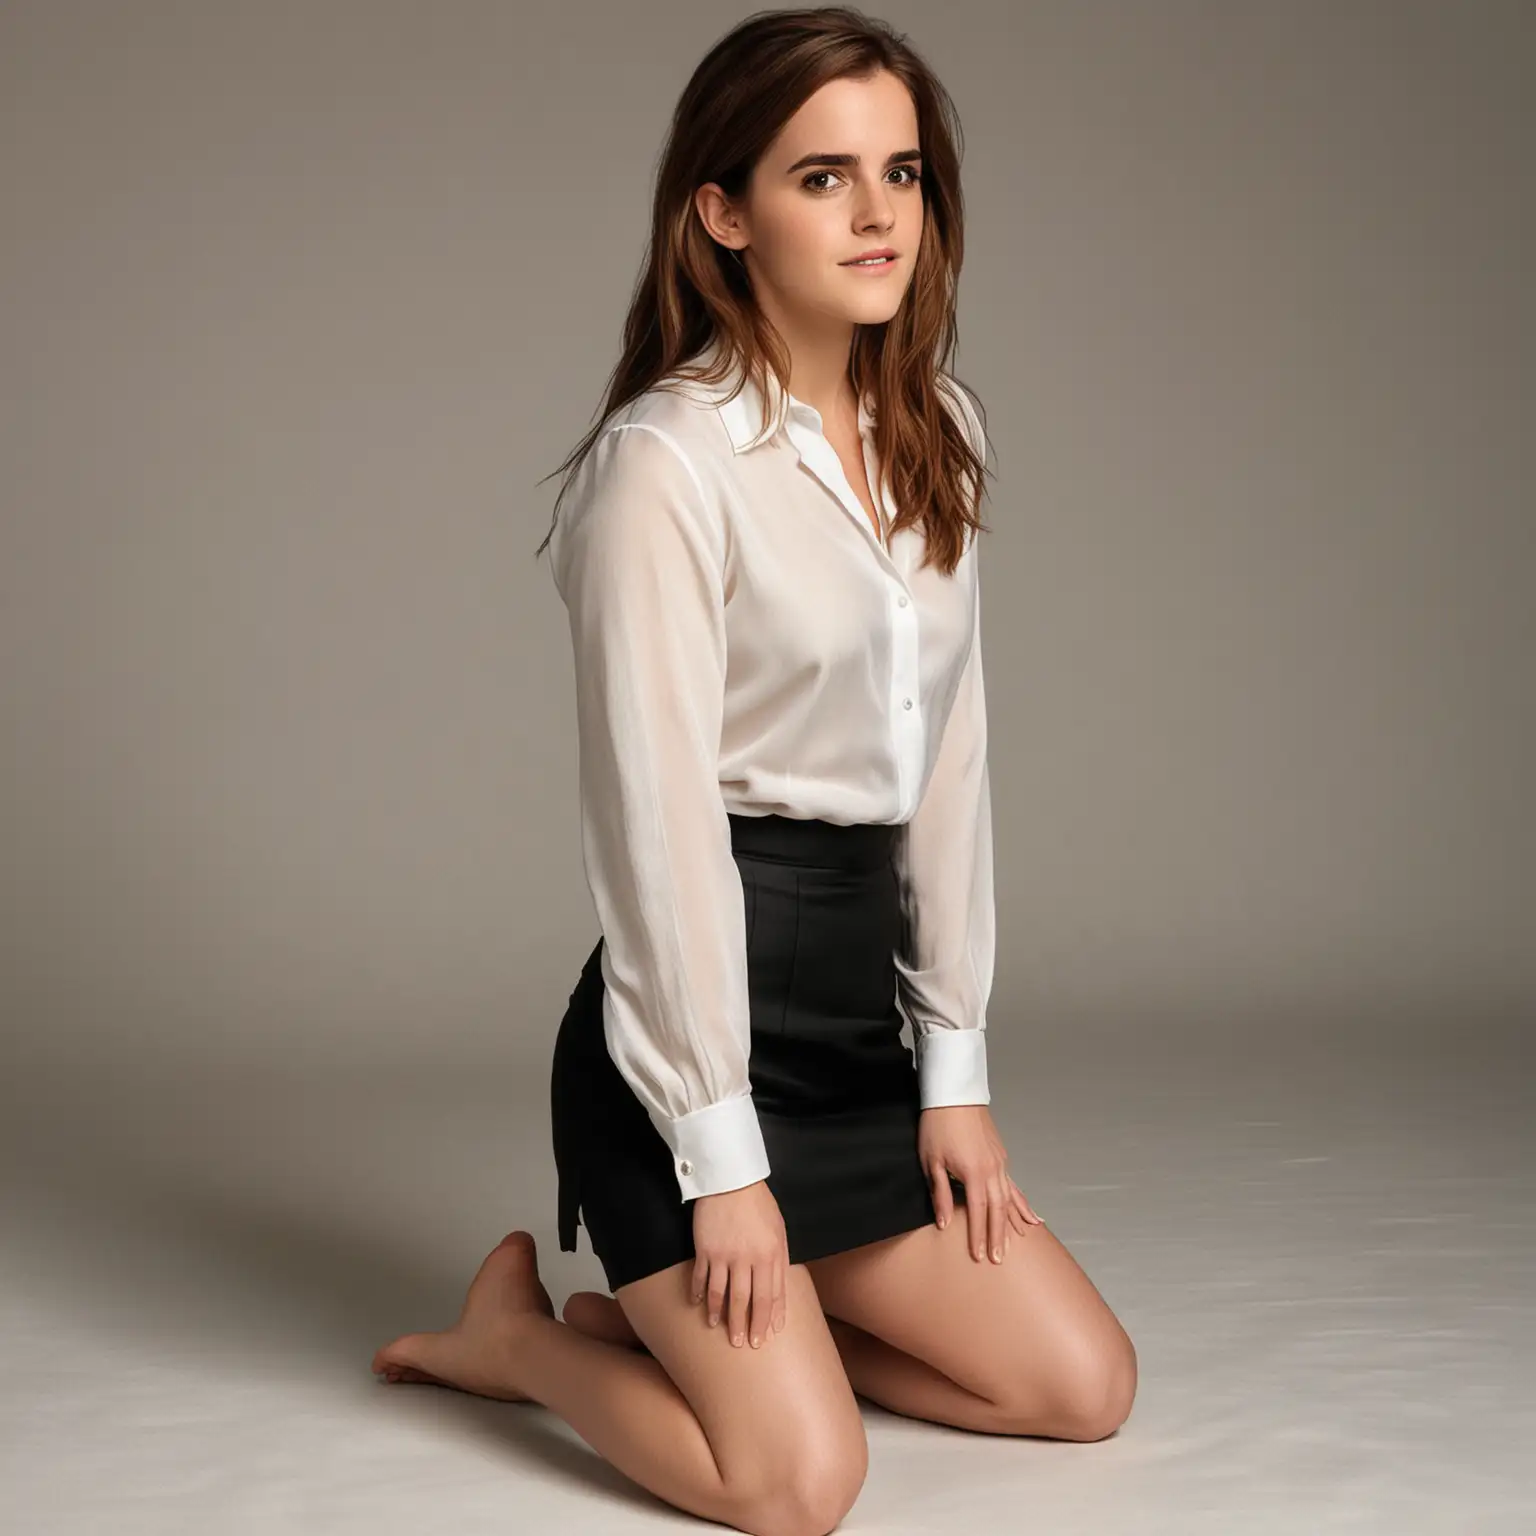 Emma Watson Wearing LowCut Ivory Silk Shirt and Black Pencil Skirt